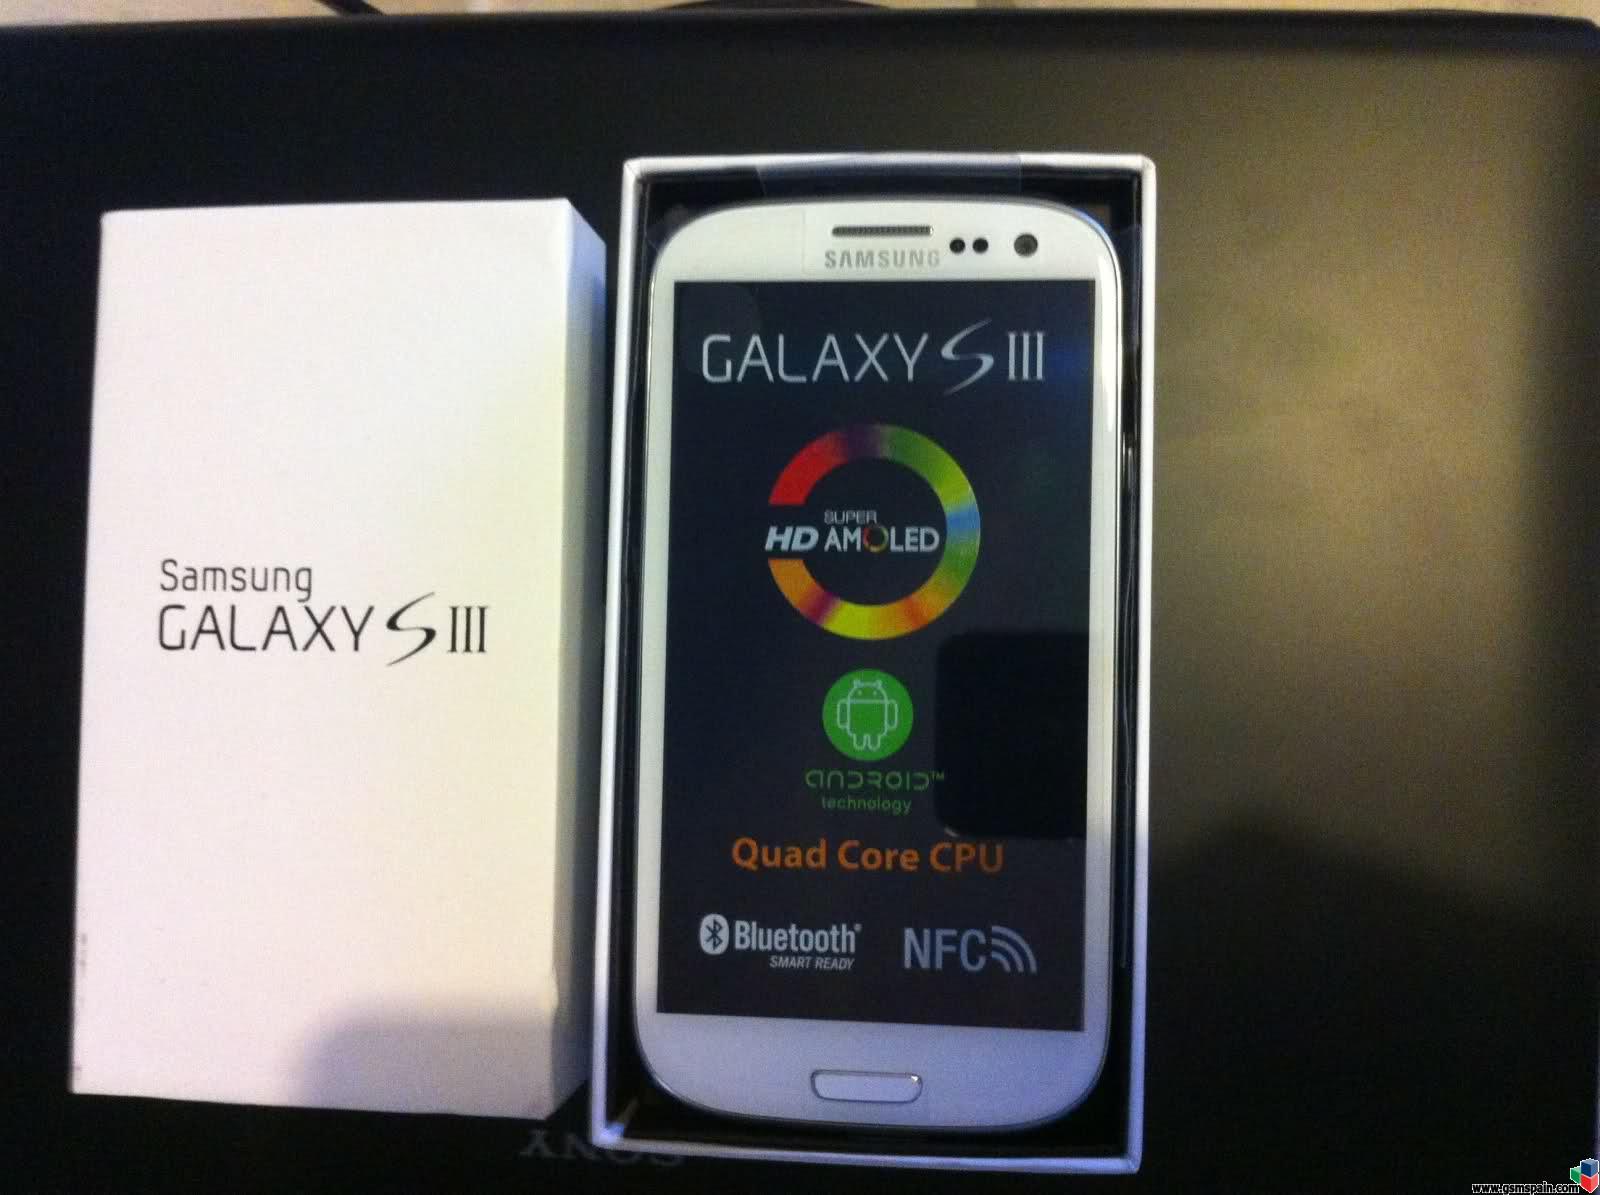 [CAMBIO] Cambio nuevo Samsung Galaxy S3 con tarjeta de memoria de 64Gb por Apple iPhone 5 64 G